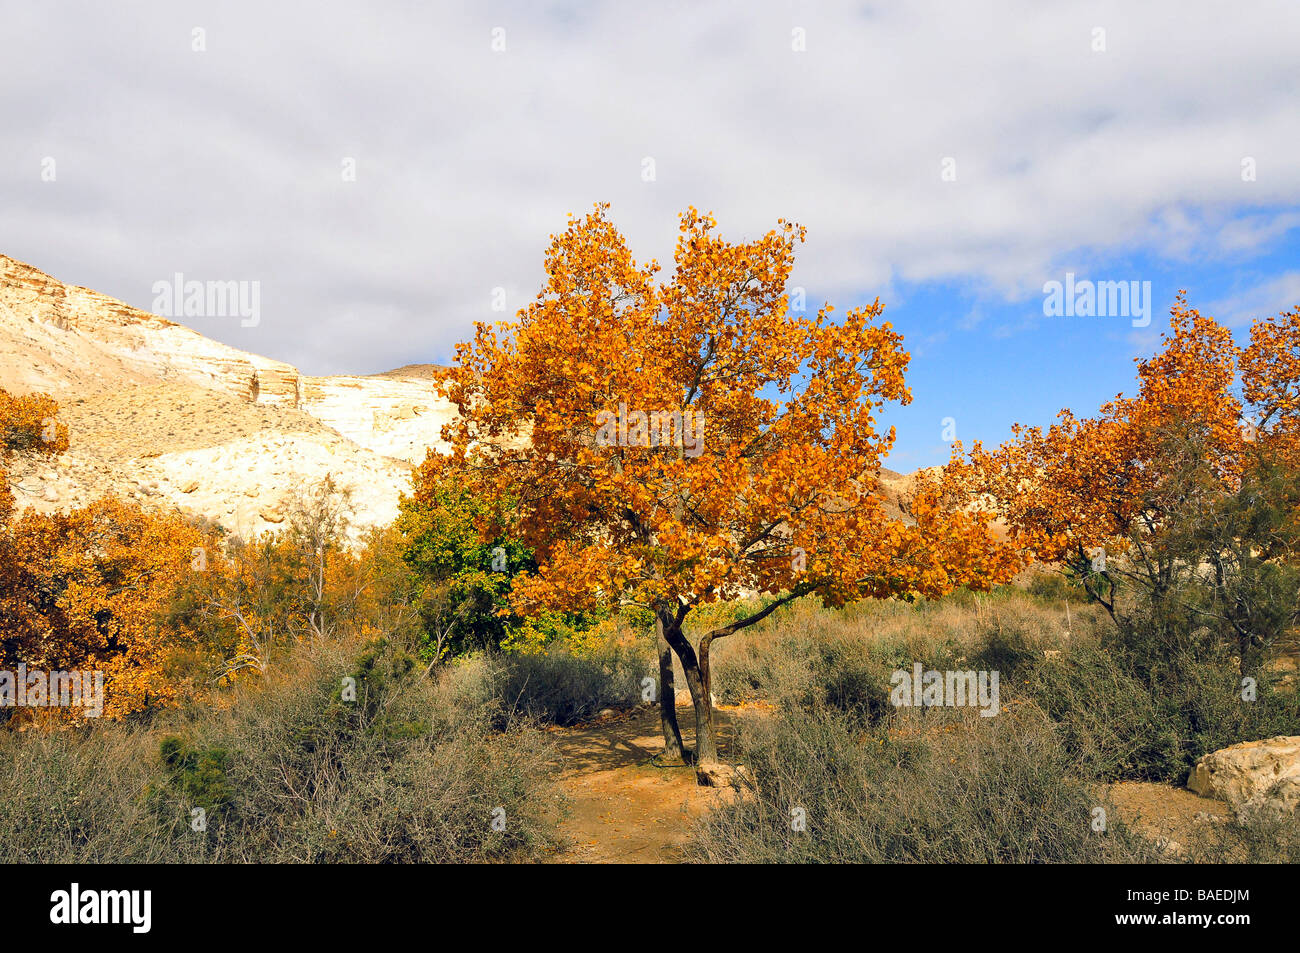 Israel desierto de Negev, un solitario árbol caducifolio de mostrar colores de otoño Foto de stock